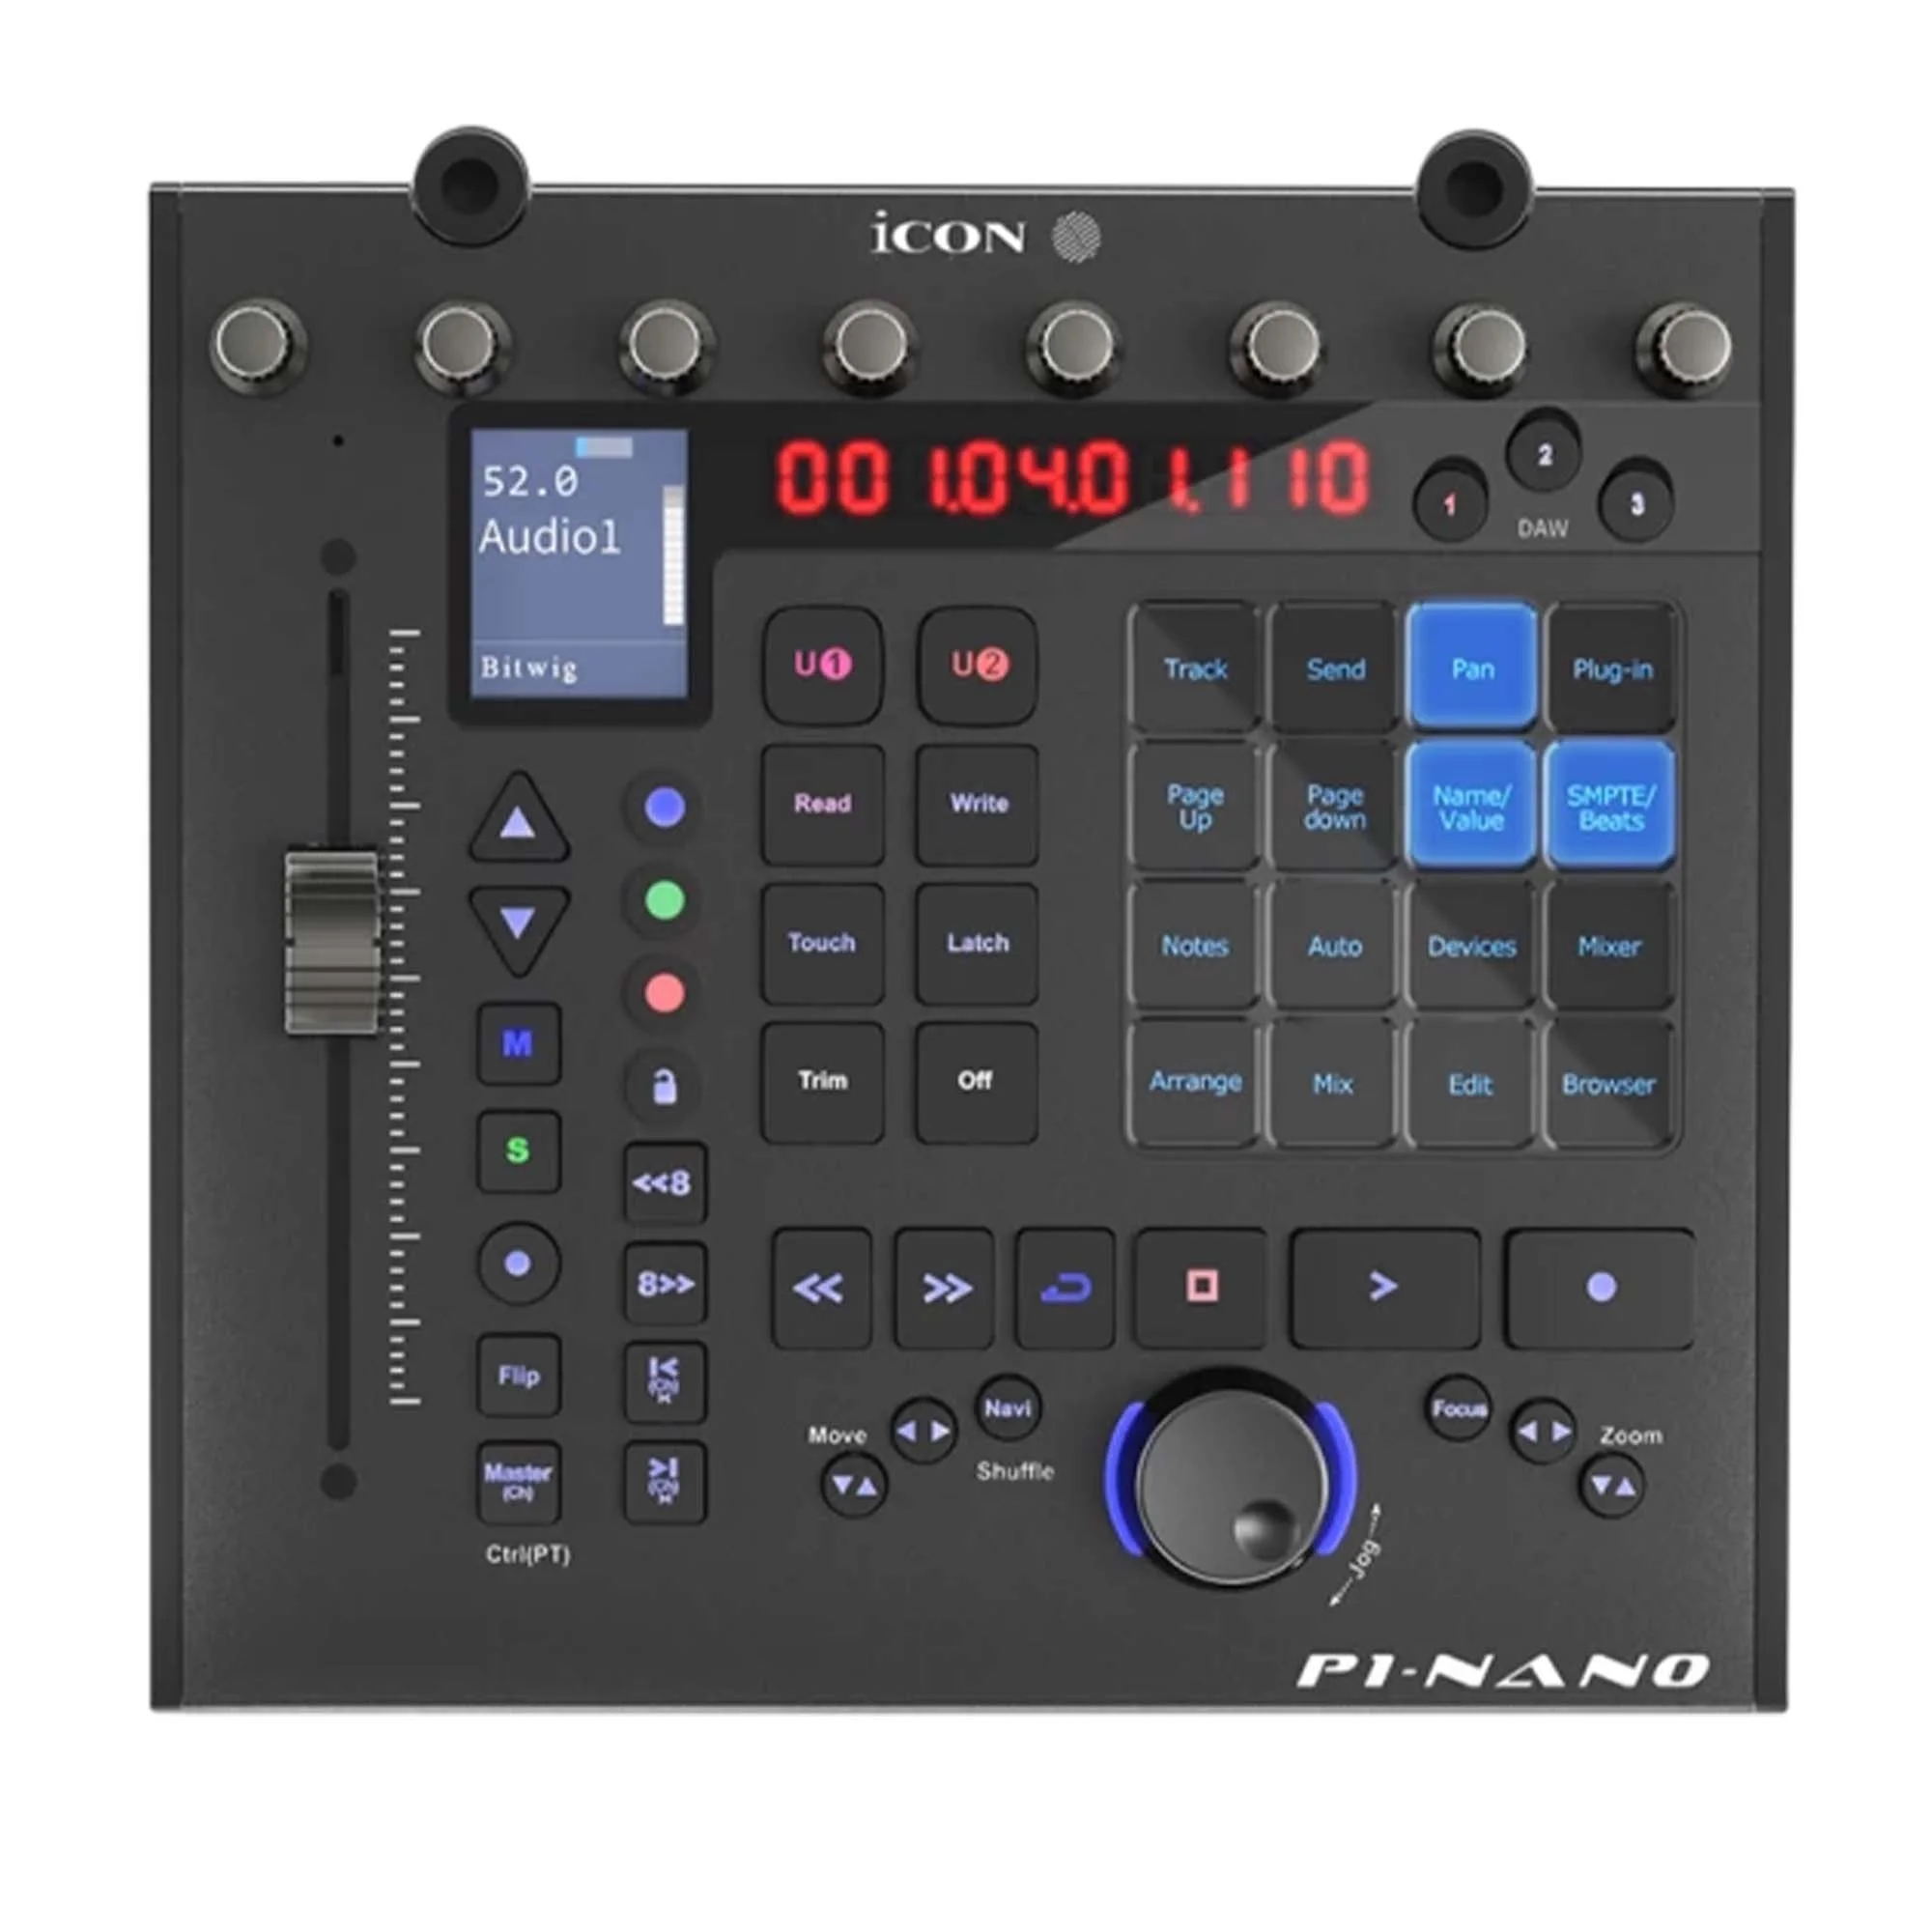 MIDI музыкальные системы (интерфейсы, контроллеры) iCON P1 Nano портастудии icon upod live m5 combo set